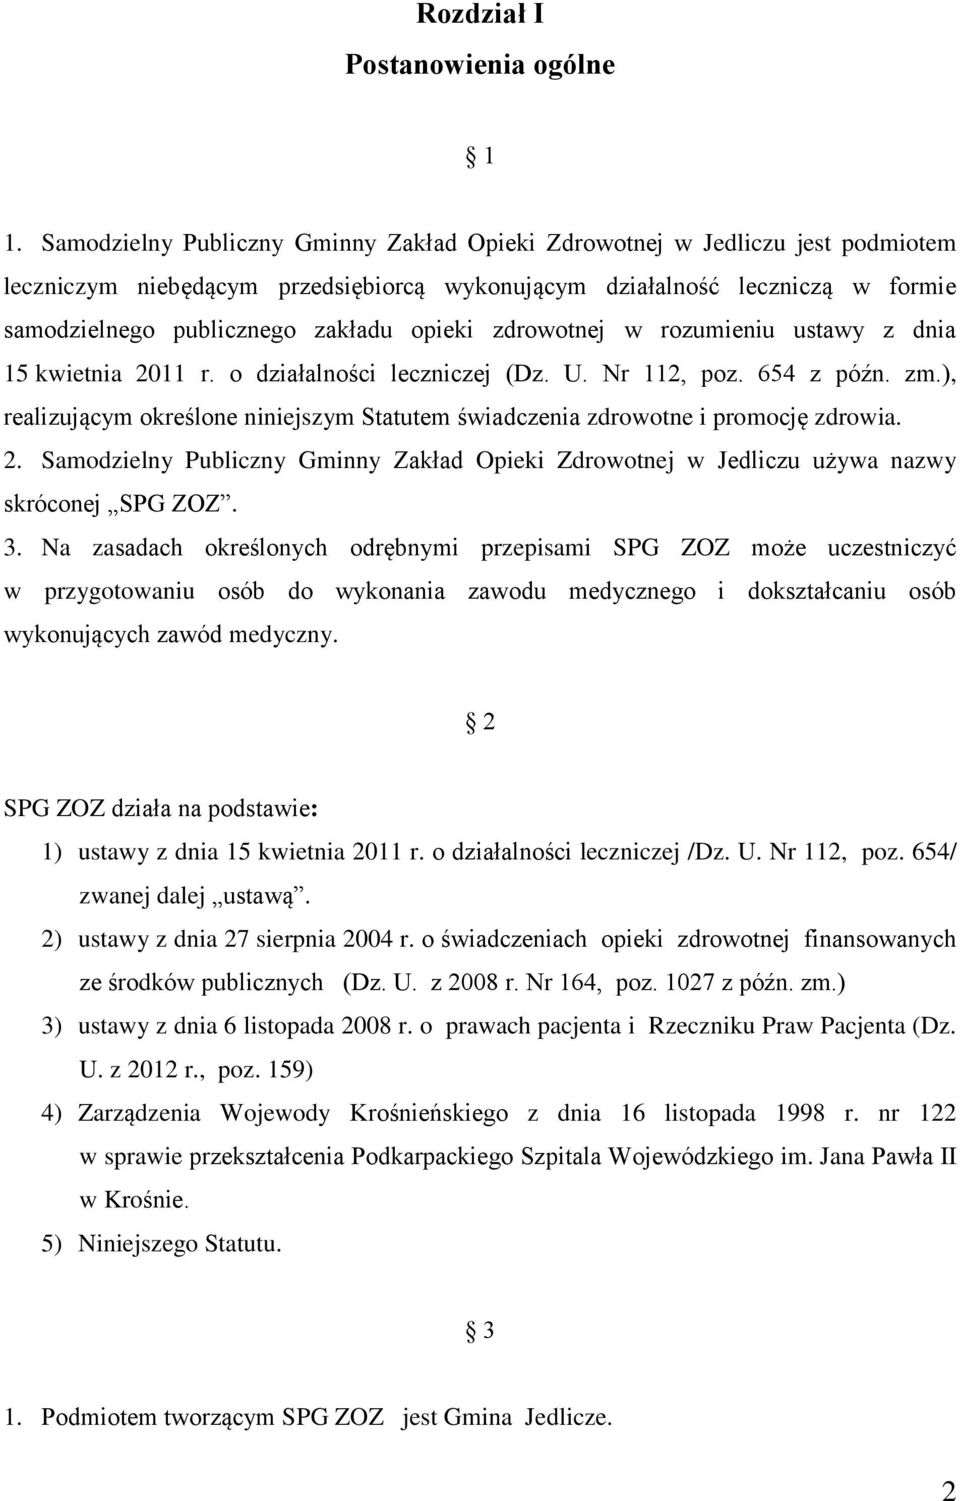 opieki zdrowotnej w rozumieniu ustawy z dnia 15 kwietnia 2011 r. o działalności leczniczej (Dz. U. Nr 112, poz. 654 z późn. zm.